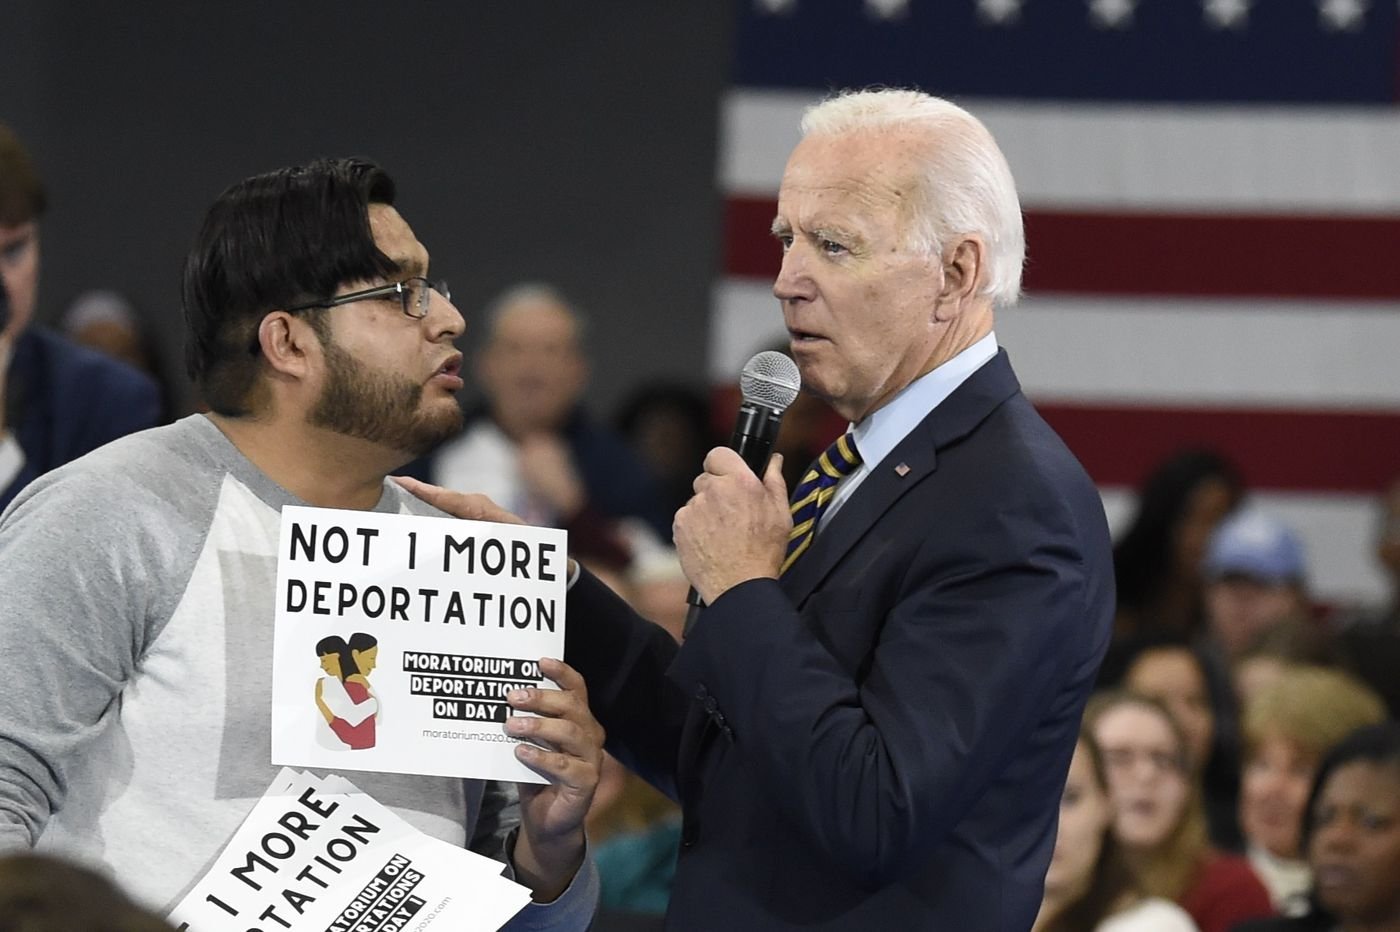  Joe Biden vrea să naturalizeze nouă milioane de imigranţi